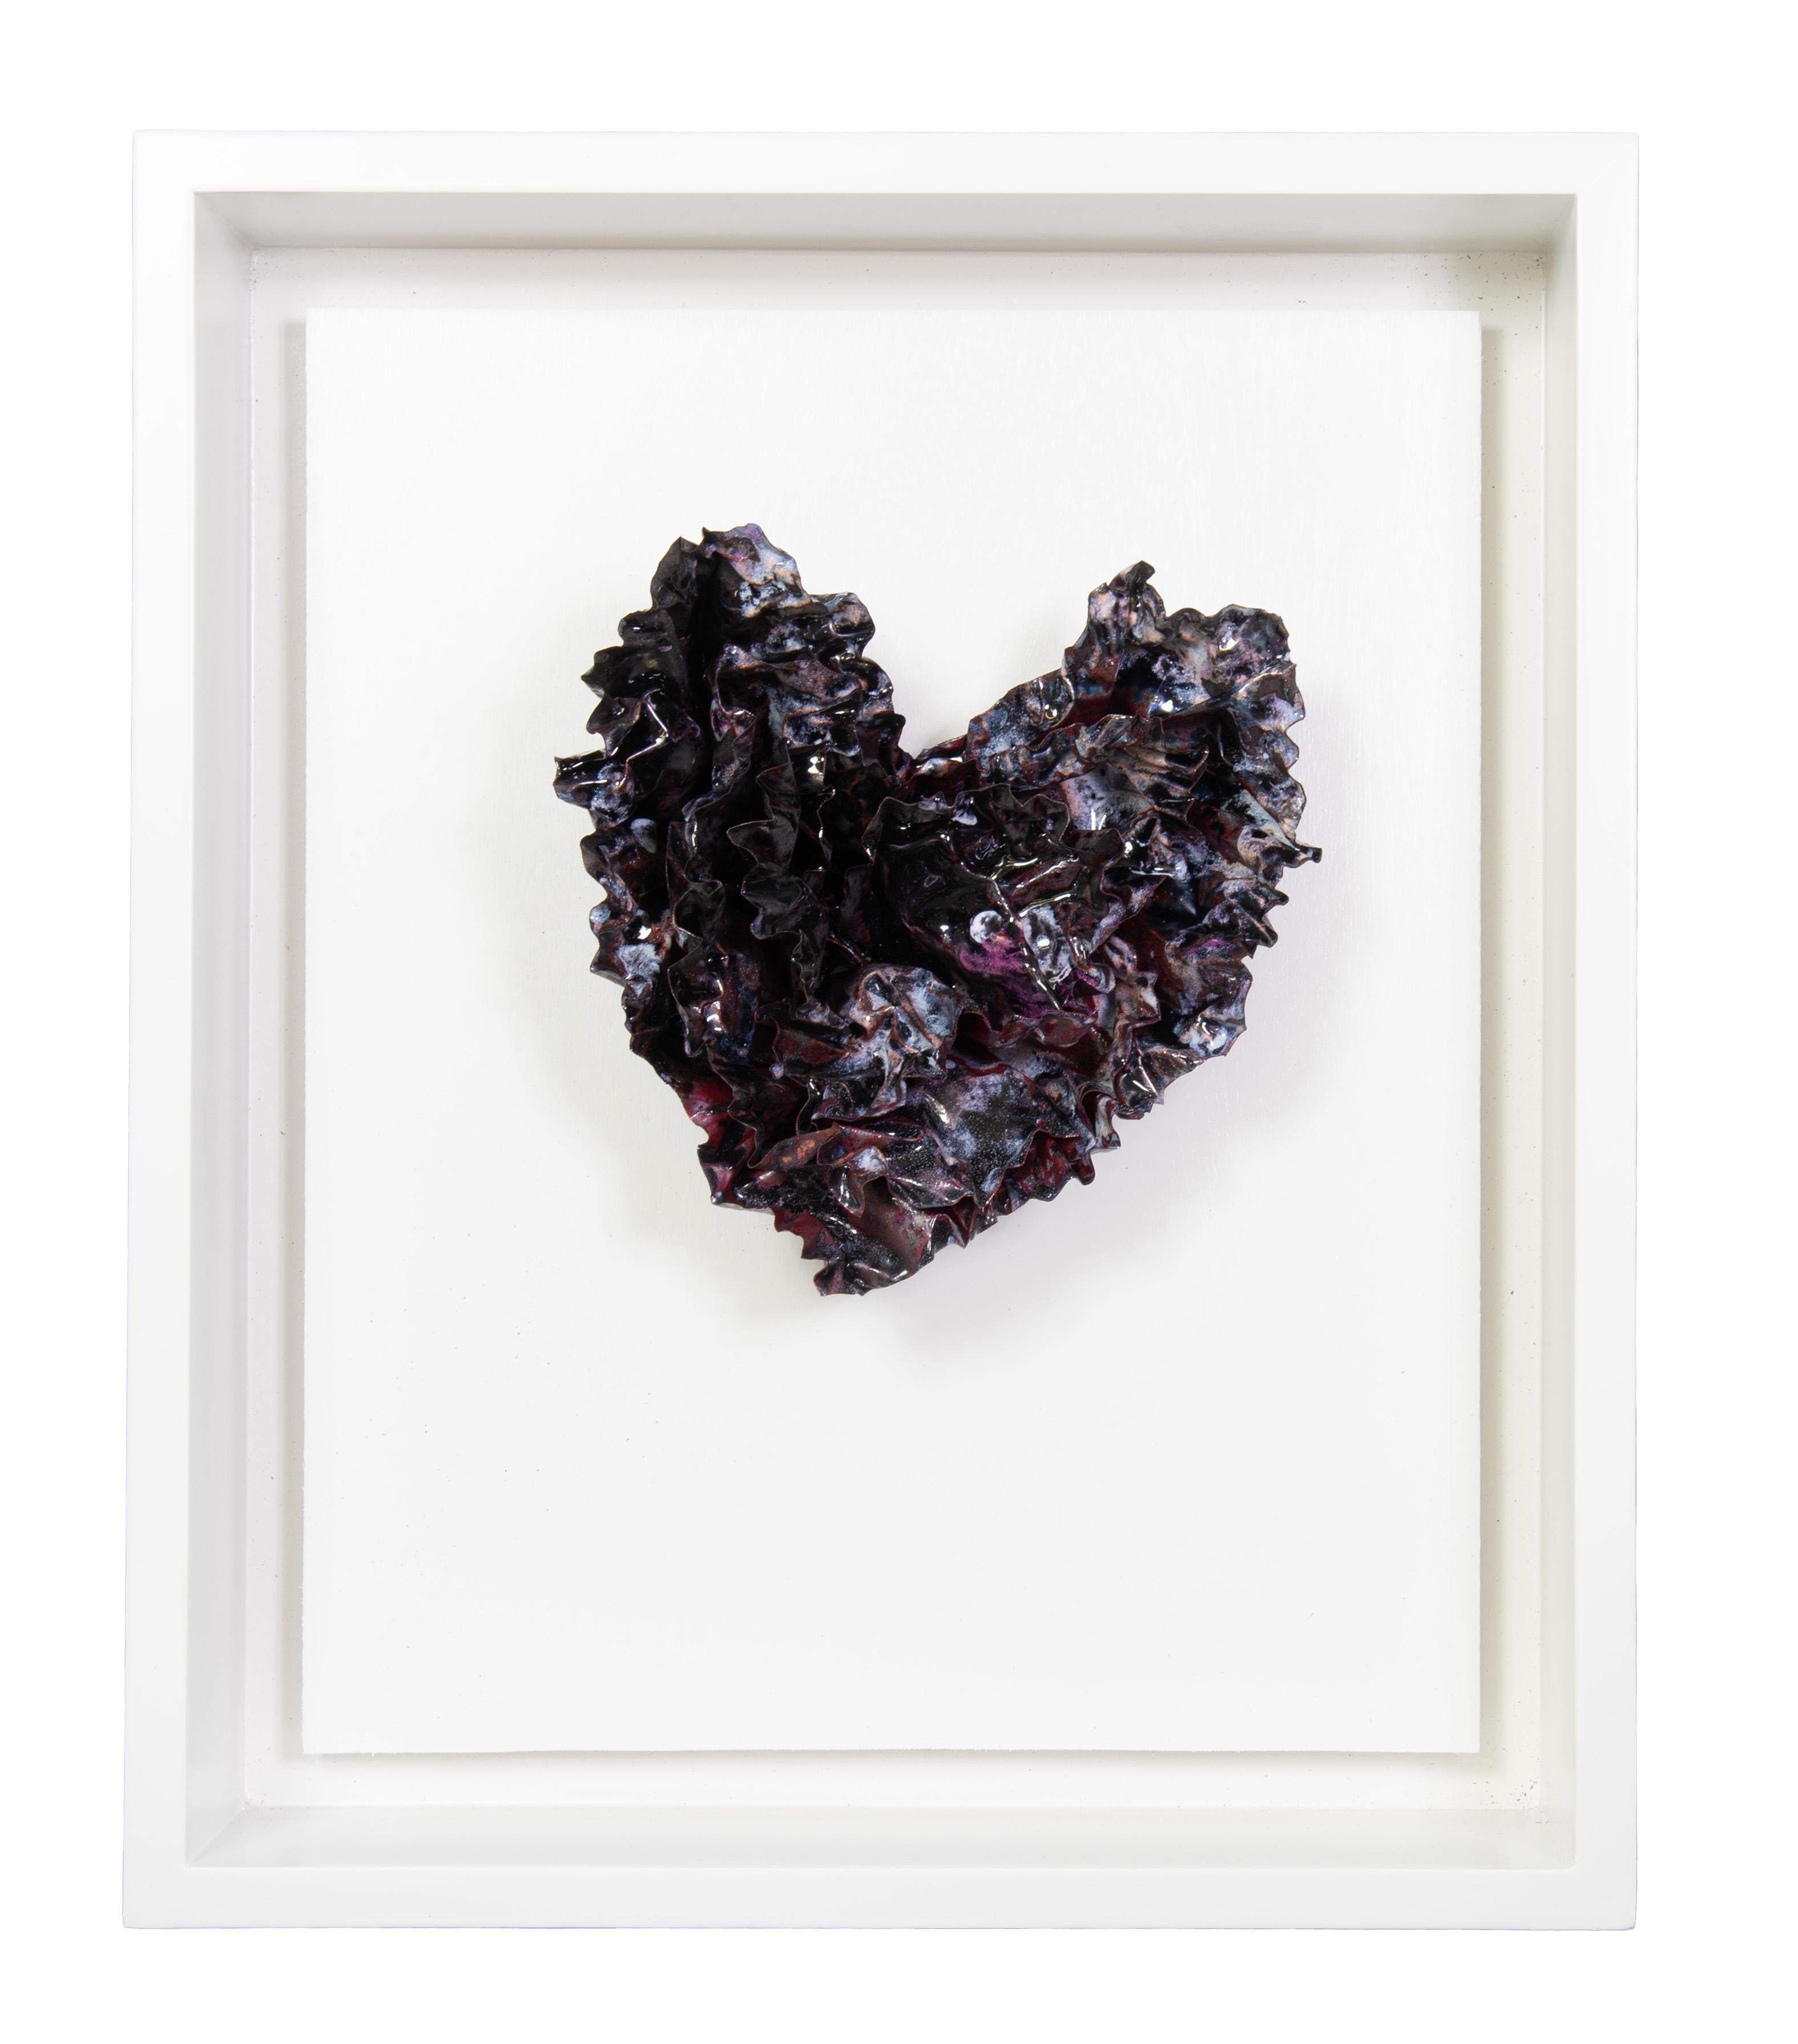 Sherry Been Abstract Sculpture - "Blackened Heart" Abstract Wall Art Sculpture, 2023